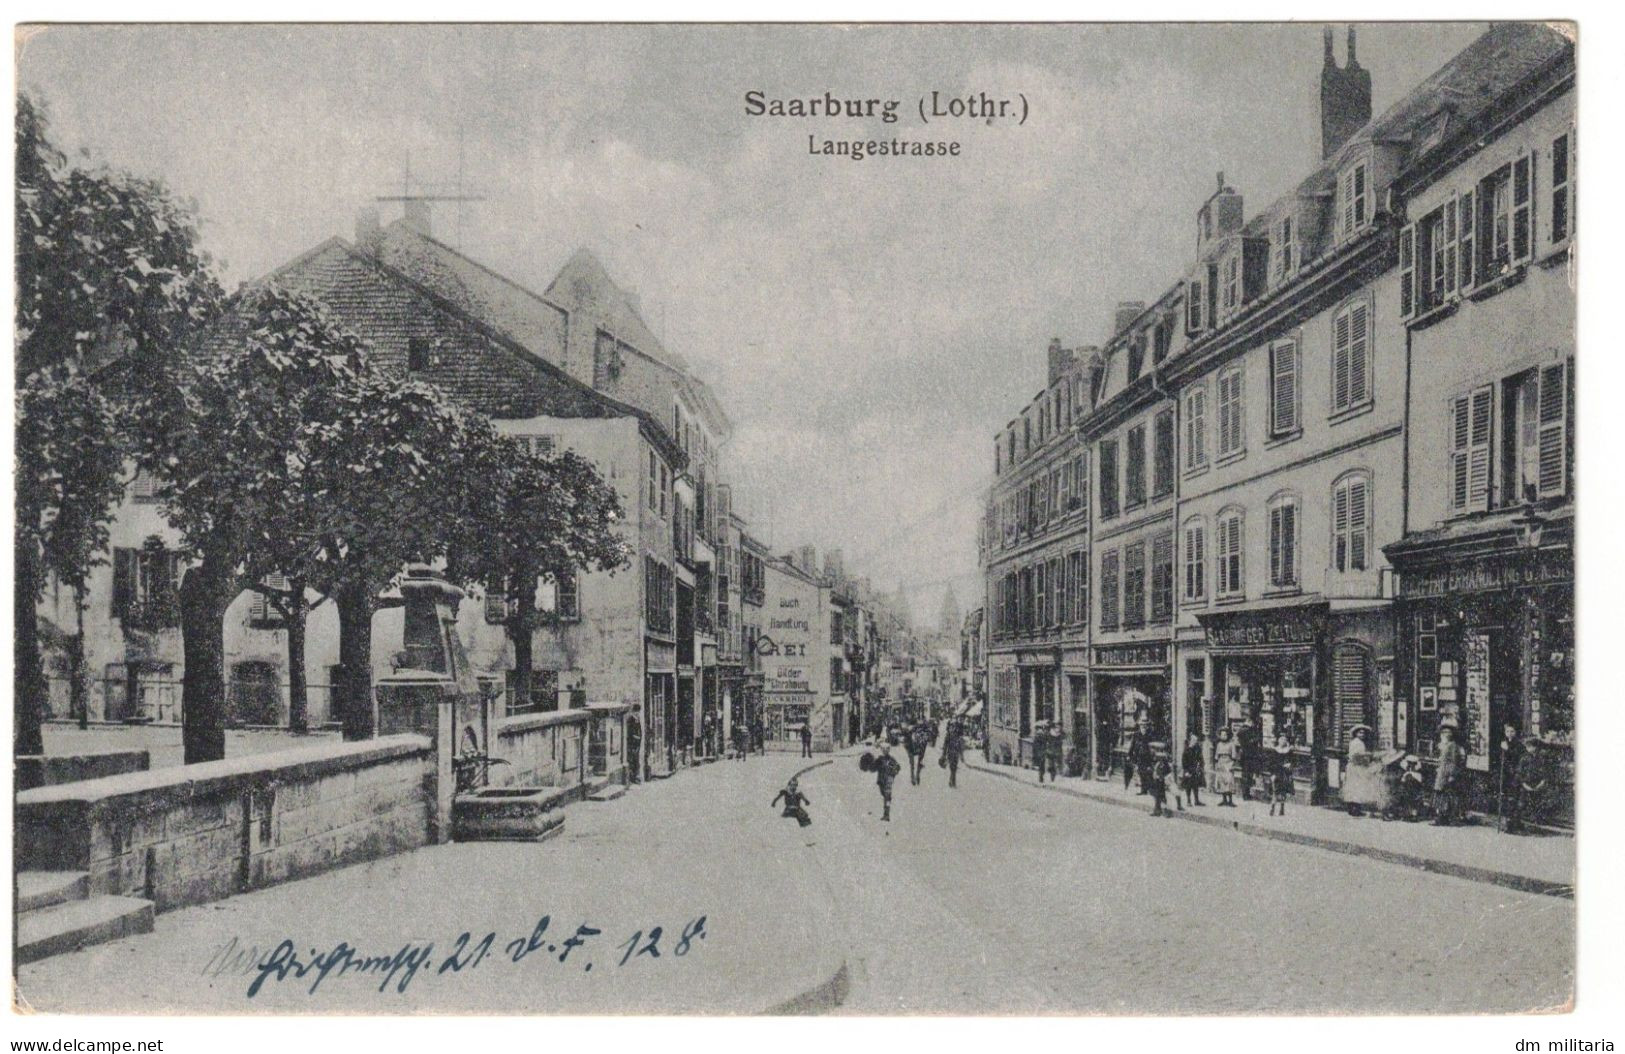 57 - CPA 1918 : SAARBURG (LOTHR.) LANGESTRASSE - RUE ANIMÉE - LOTHRINGEN - LORRAINE - SARREBOURG - MOSELLE - Sarrebourg